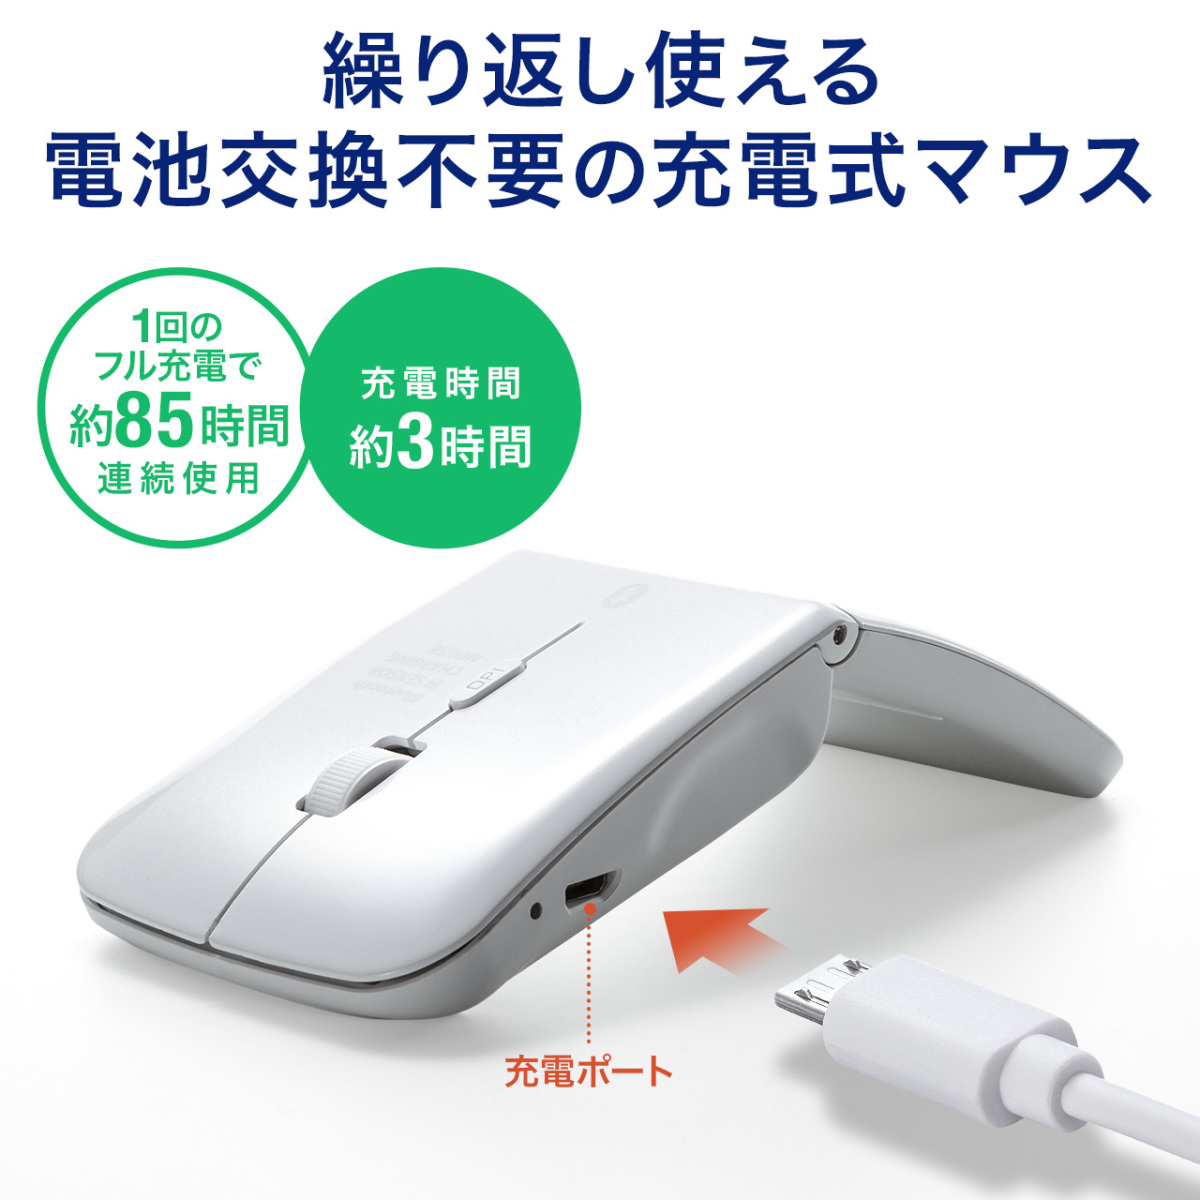 マウス ワイヤレスマウス 無線 ブルートゥース 充電式 マルチペアリング 折りたたみ 3ボタン Bluetooth 400-MA120W